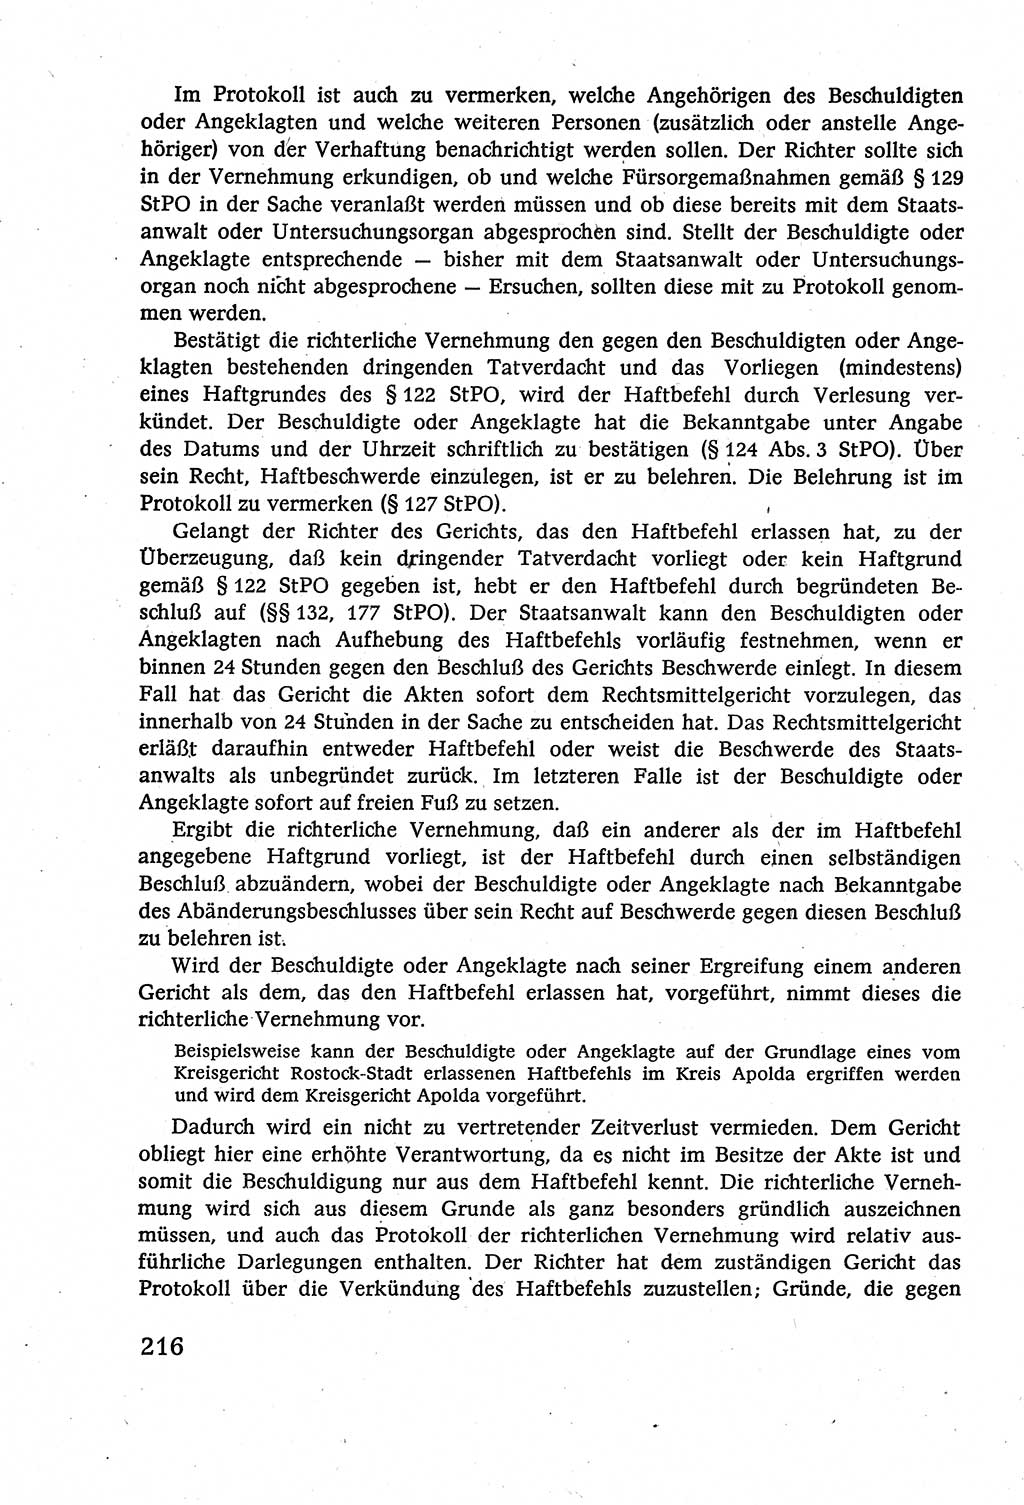 Strafverfahrensrecht [Deutsche Demokratische Republik (DDR)], Lehrbuch 1977, Seite 216 (Strafverf.-R. DDR Lb. 1977, S. 216)